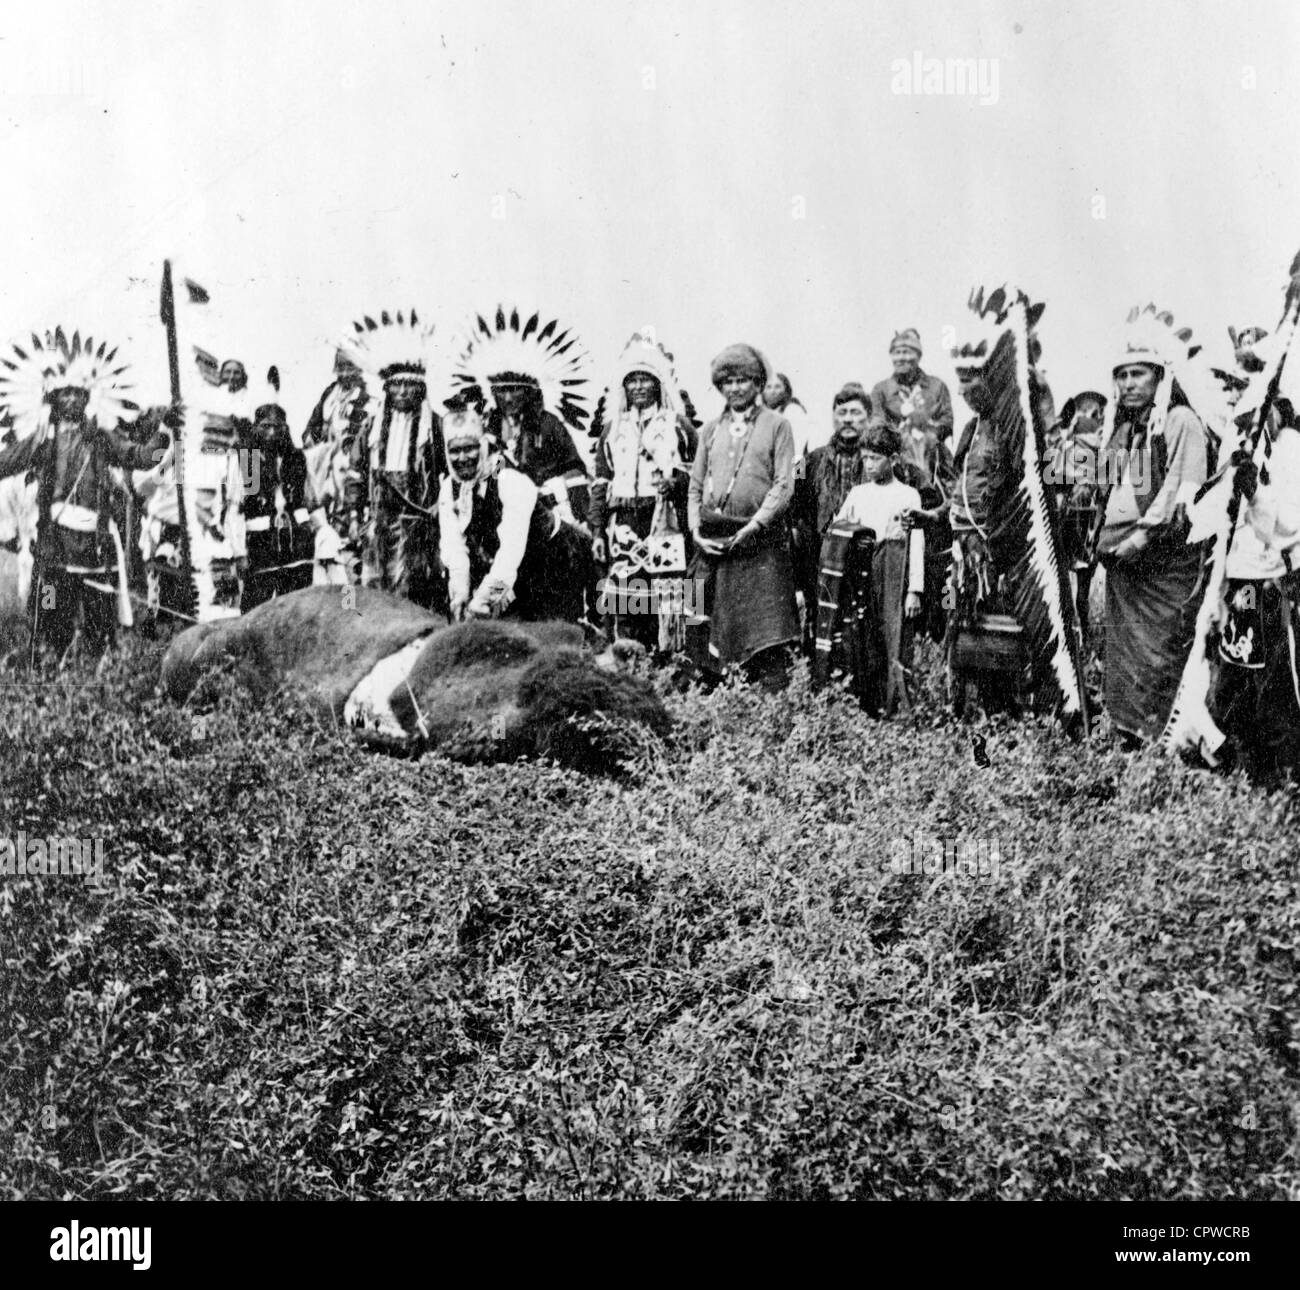 Geronimo es letzten Büffel. Geronimo Stand über Tote Büffel, Kleid mit einheimischen Männer und jungen im Zeremoniell hinter ihm stehen Stockfoto